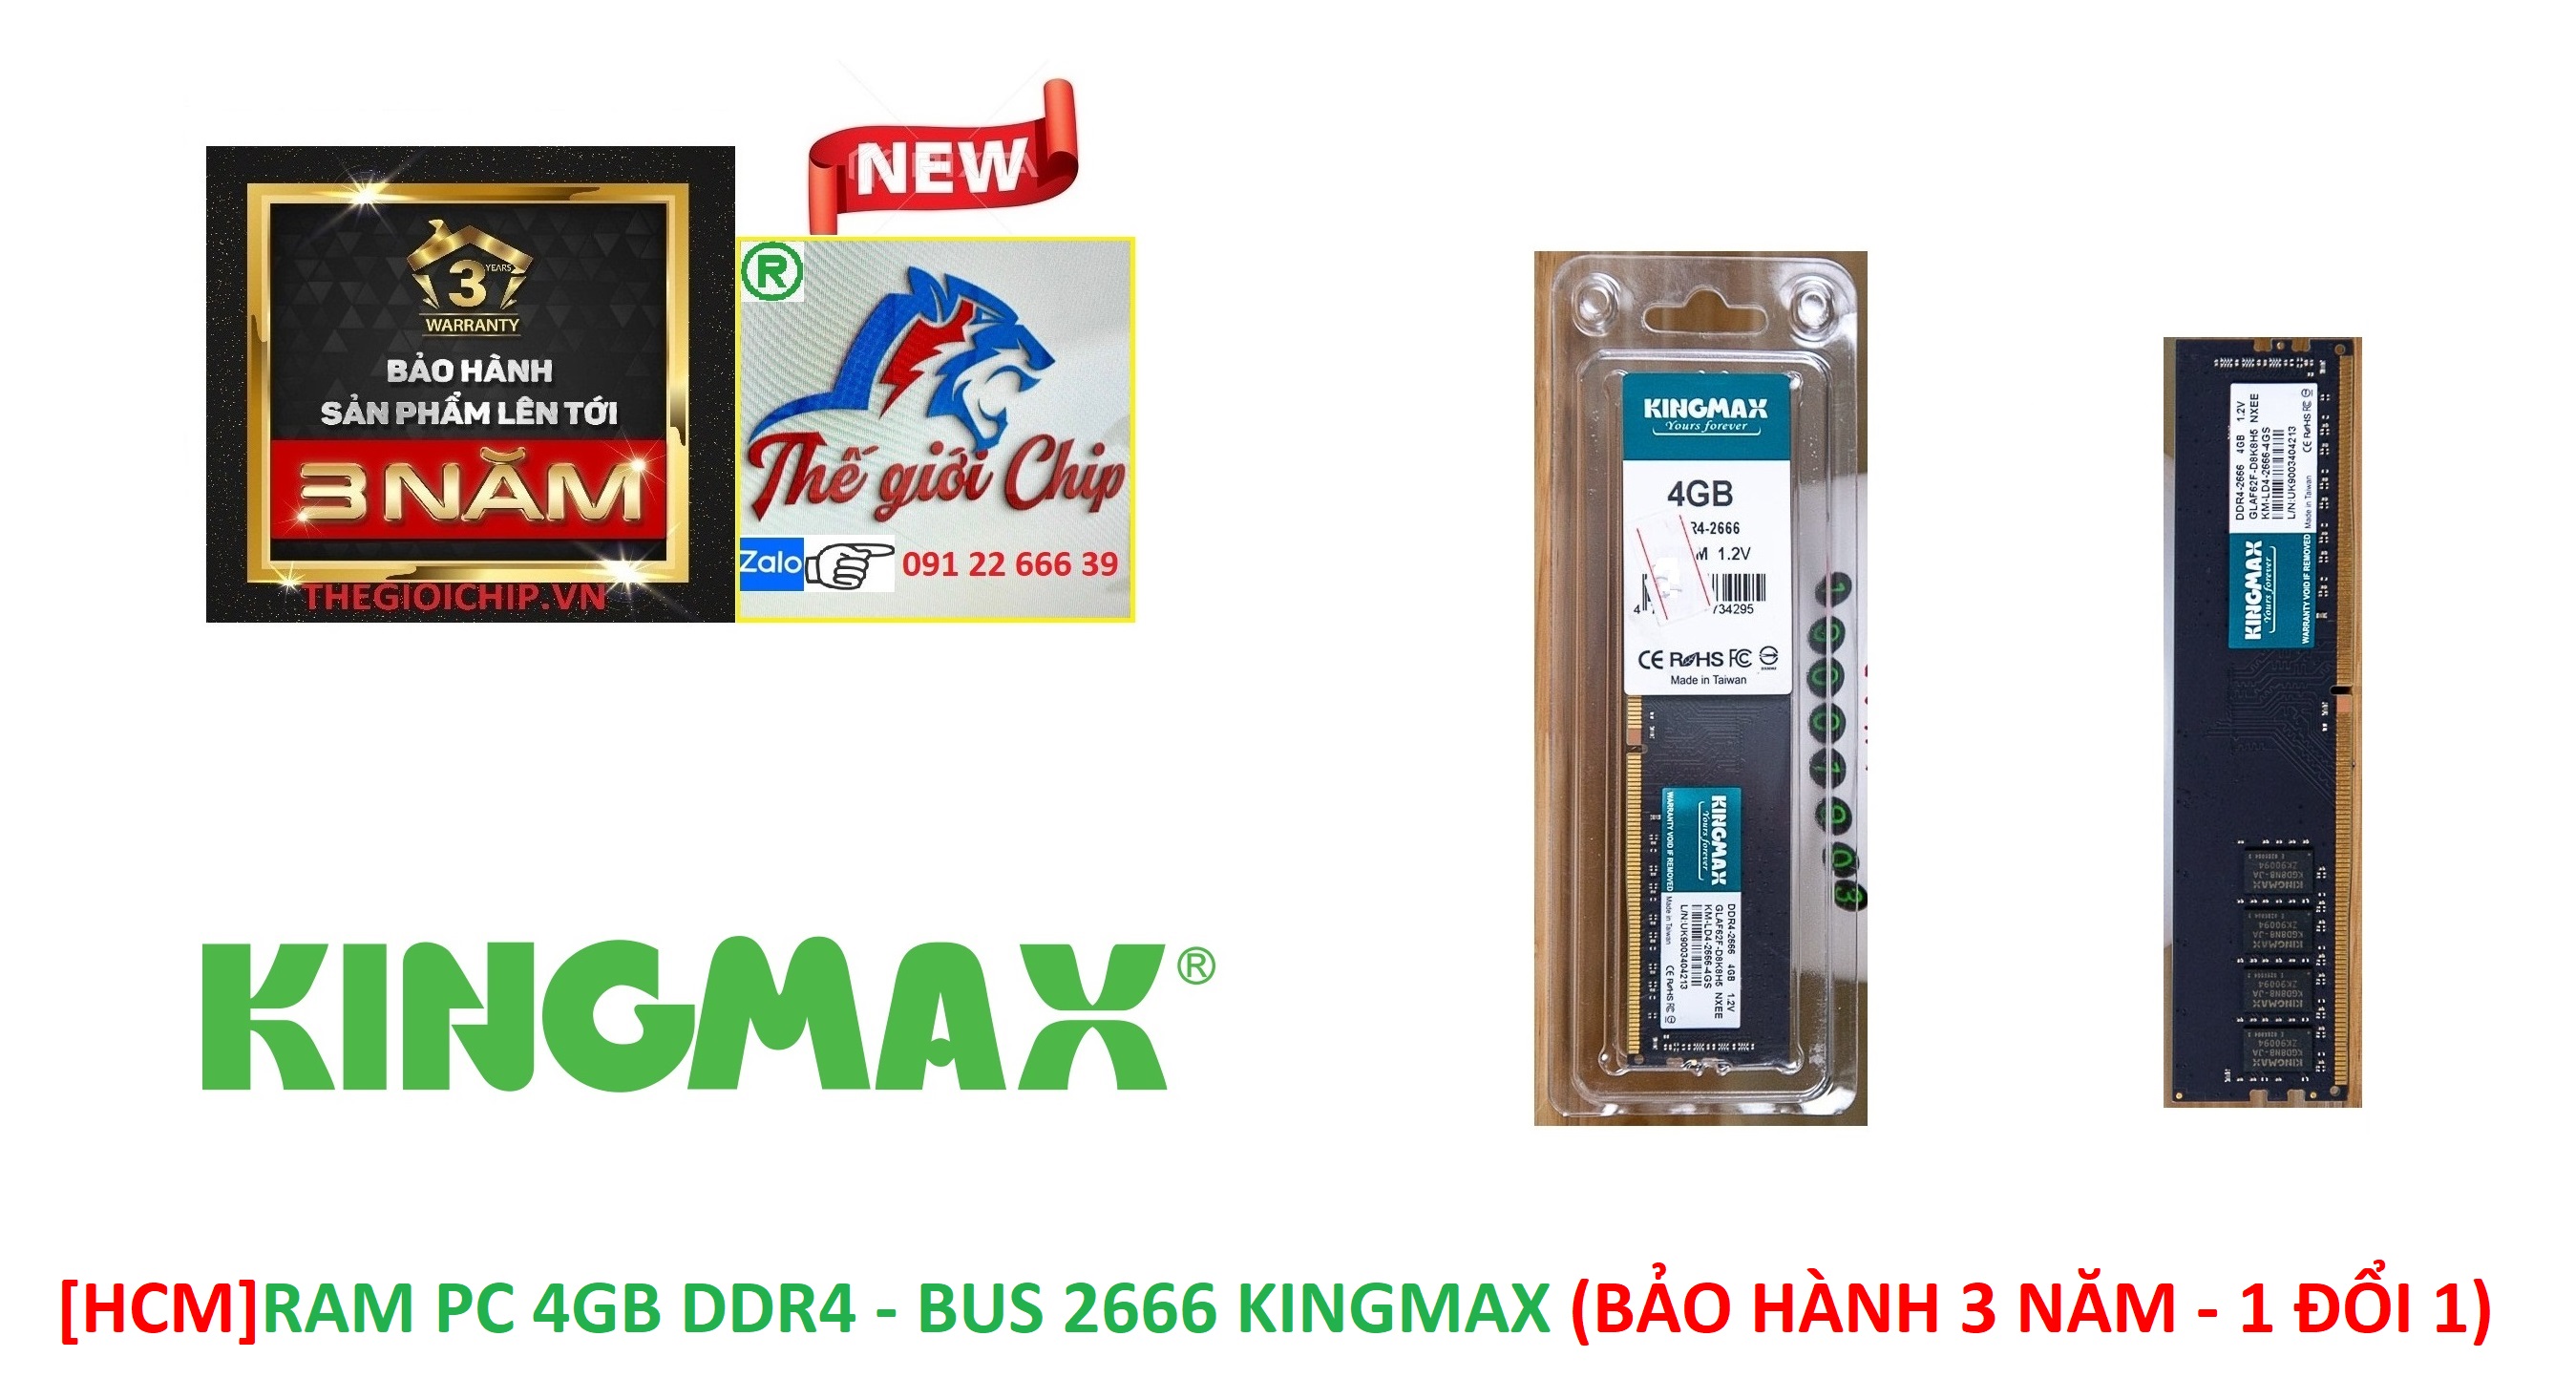 HCMRAM PC 4GB DDR4 - BUS 2666 KINGMAX BẢO HÀNH 3 NĂM - 1 ĐỔI 1